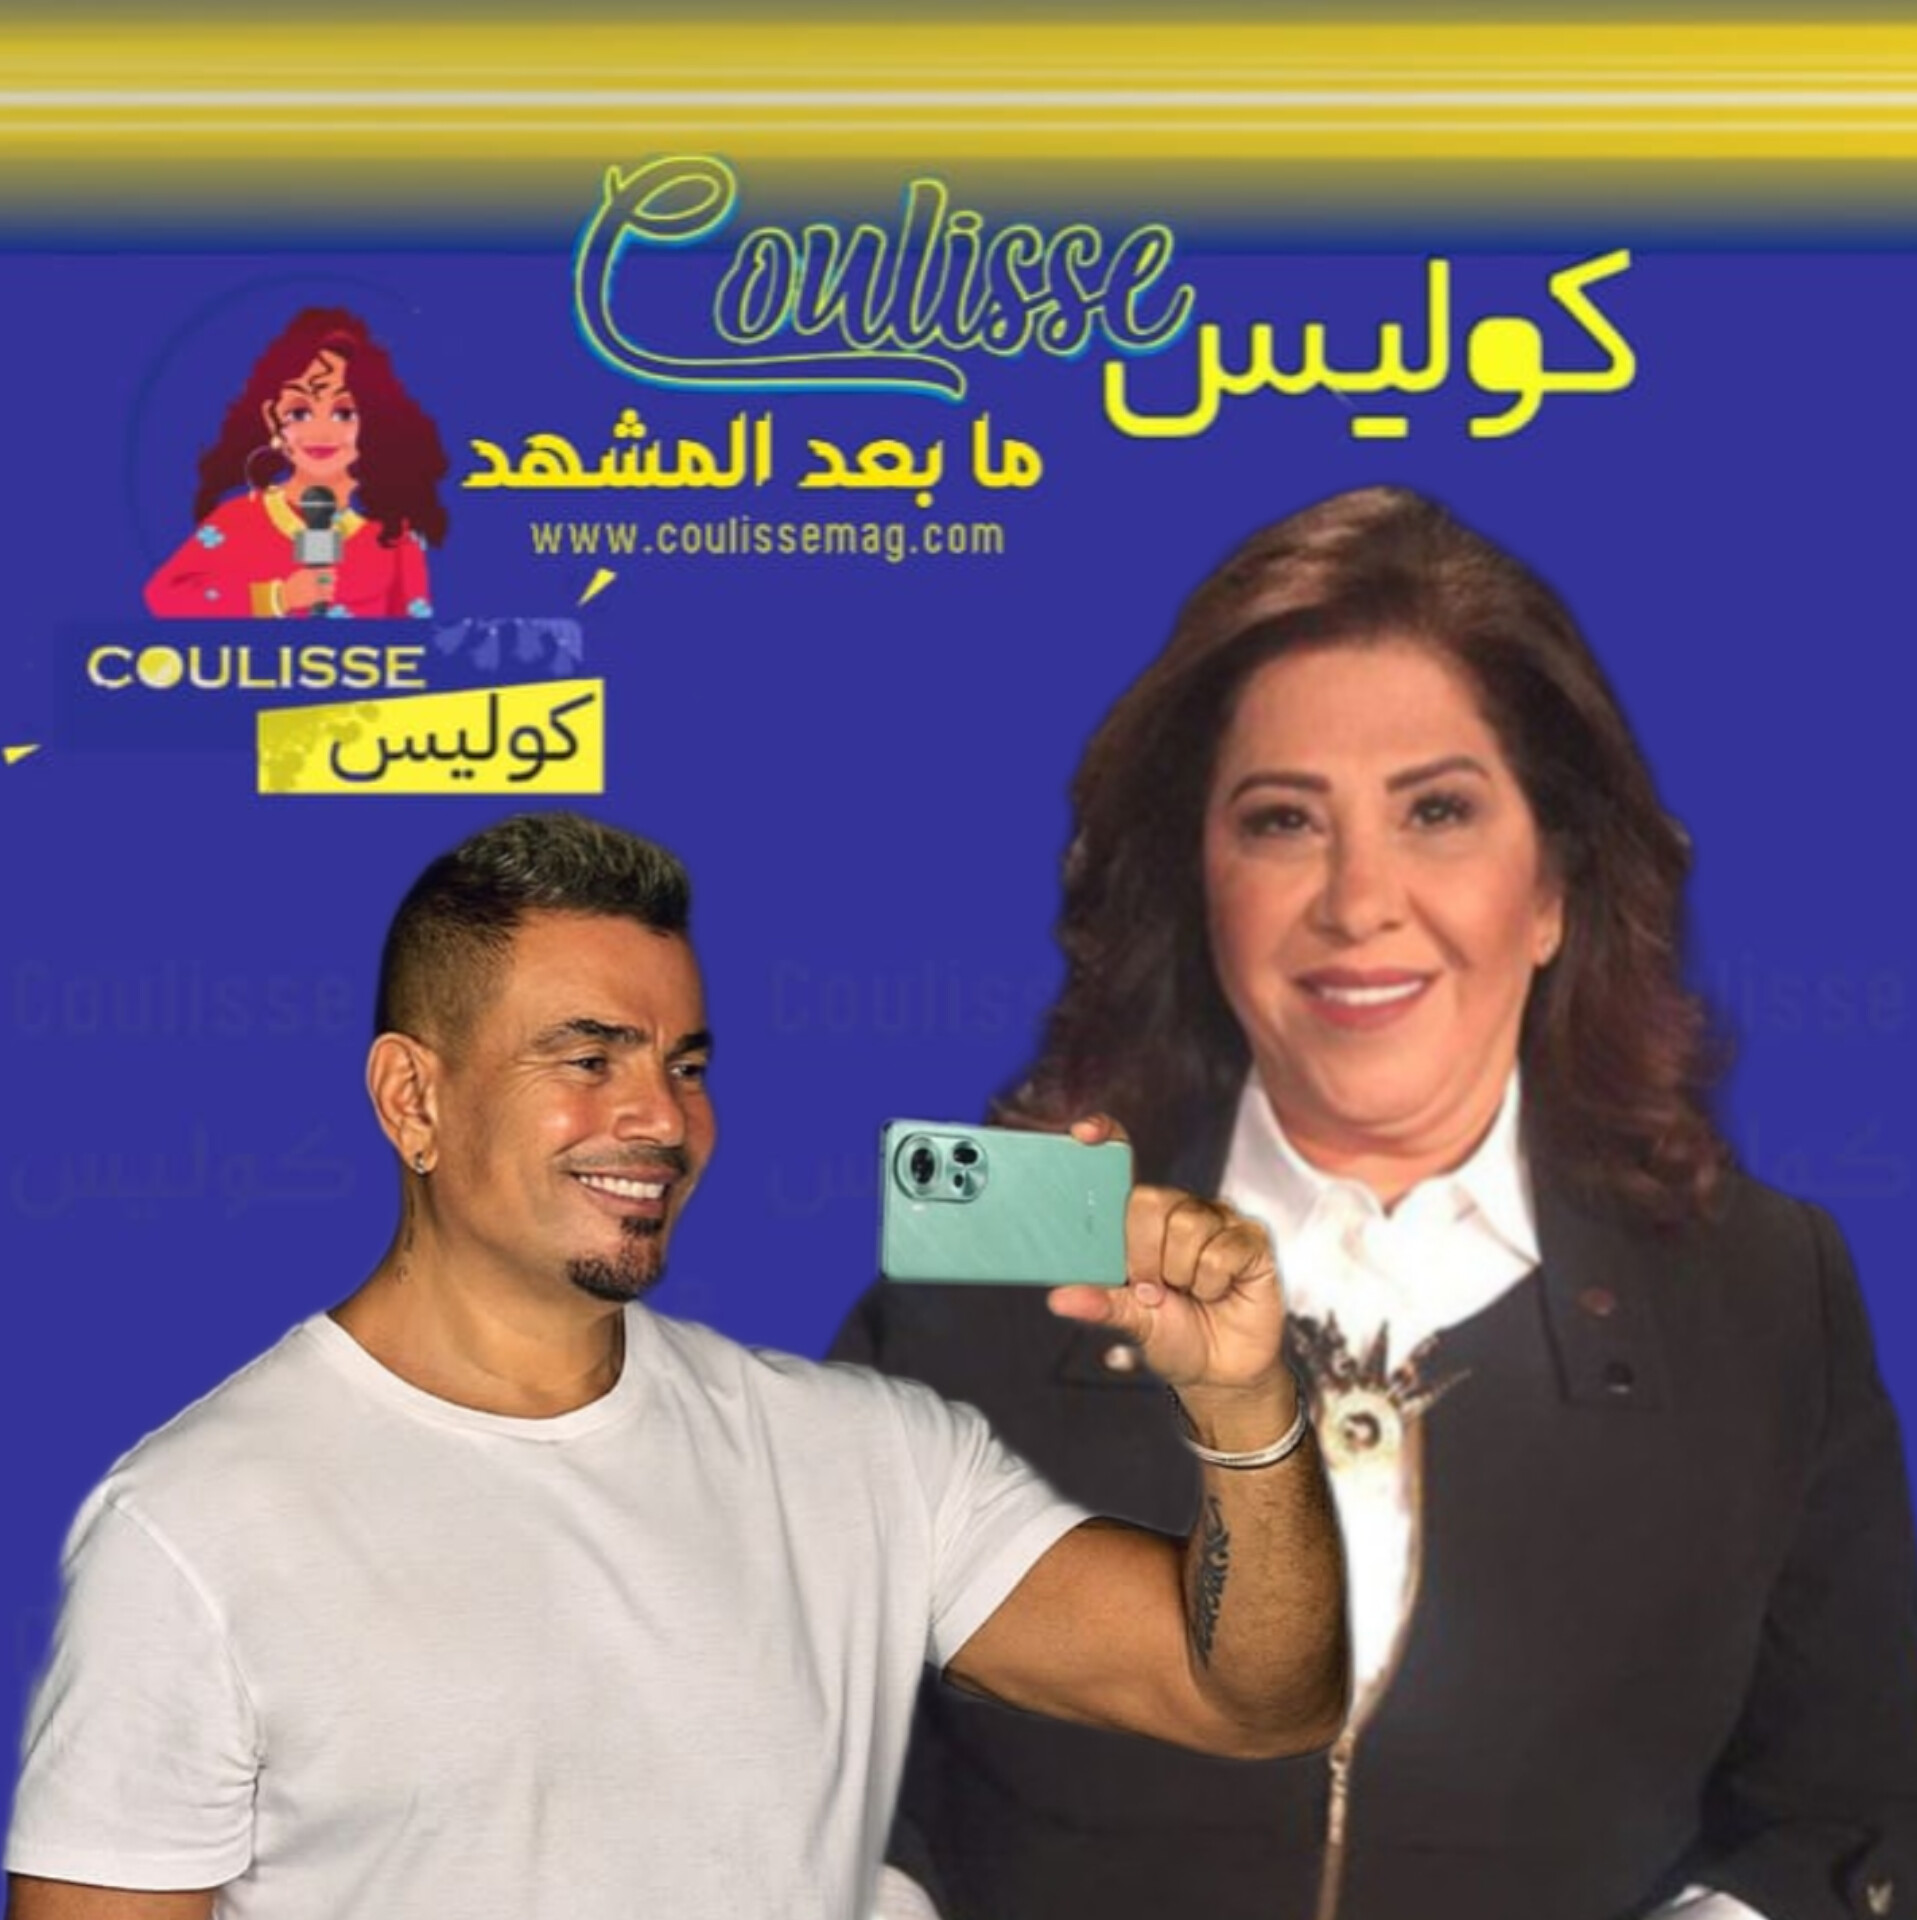 ليلى عبد اللطيف تنبأت بموقف عمرو دياب ما الحقيقة؟! – فيديو